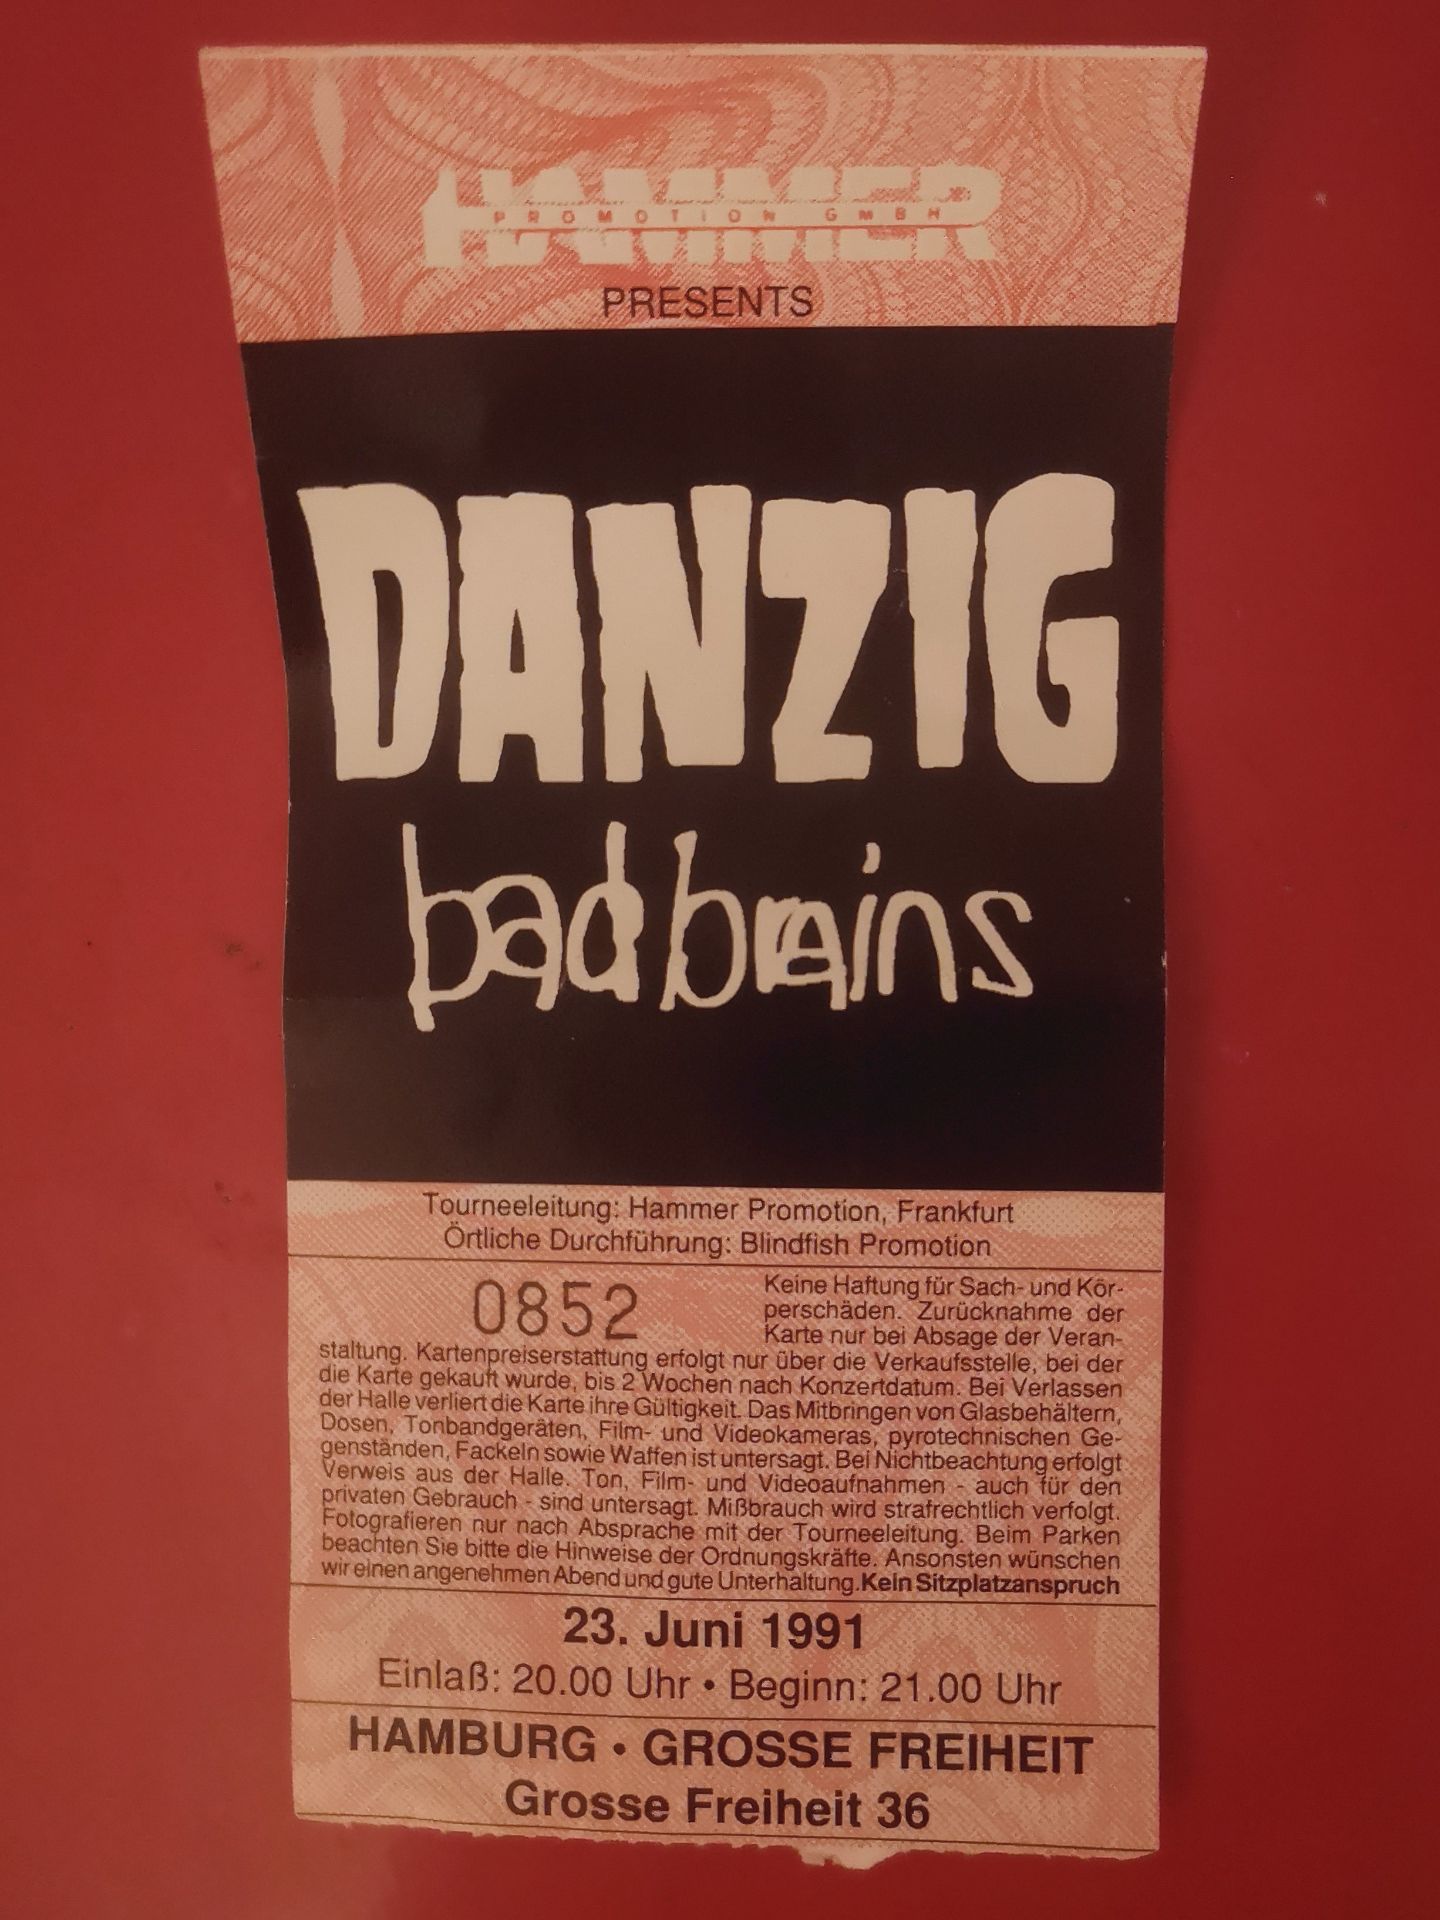 Danzig und die Bad Brains 1991 in Hamburg.